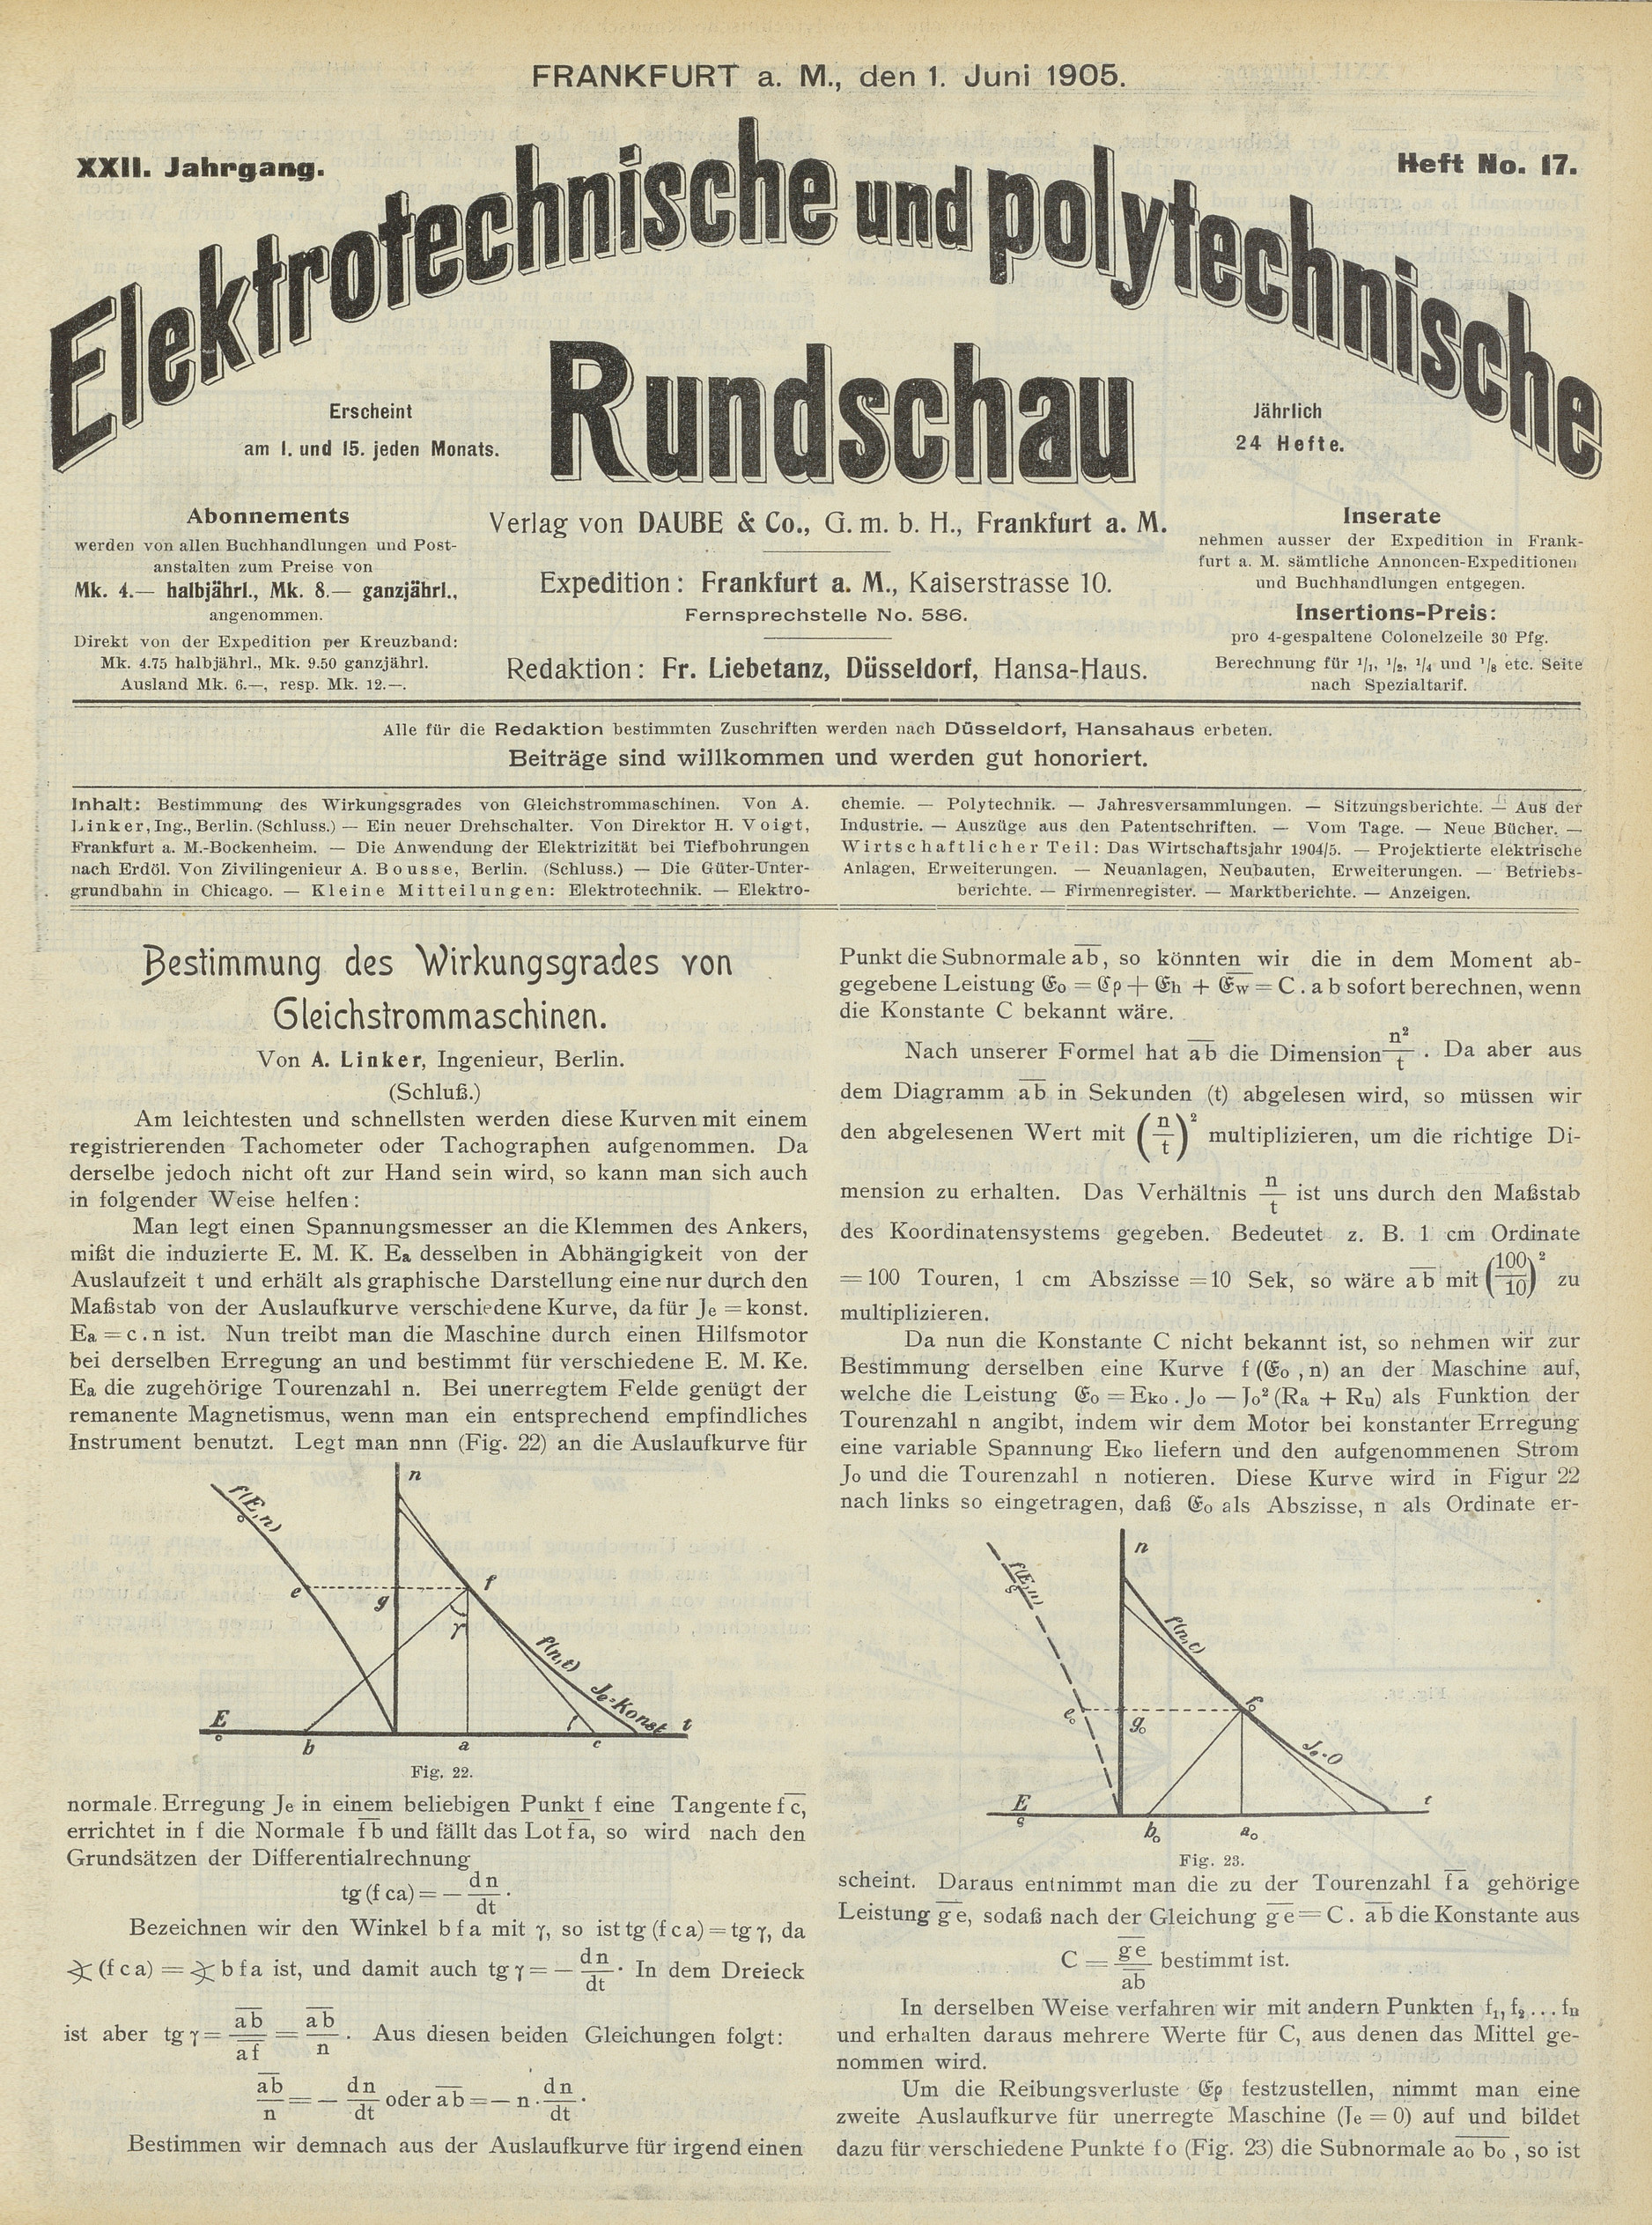 Elektrotechnische und polytechnische Rundschau, XXII. Jahrgang, Heft No. 17